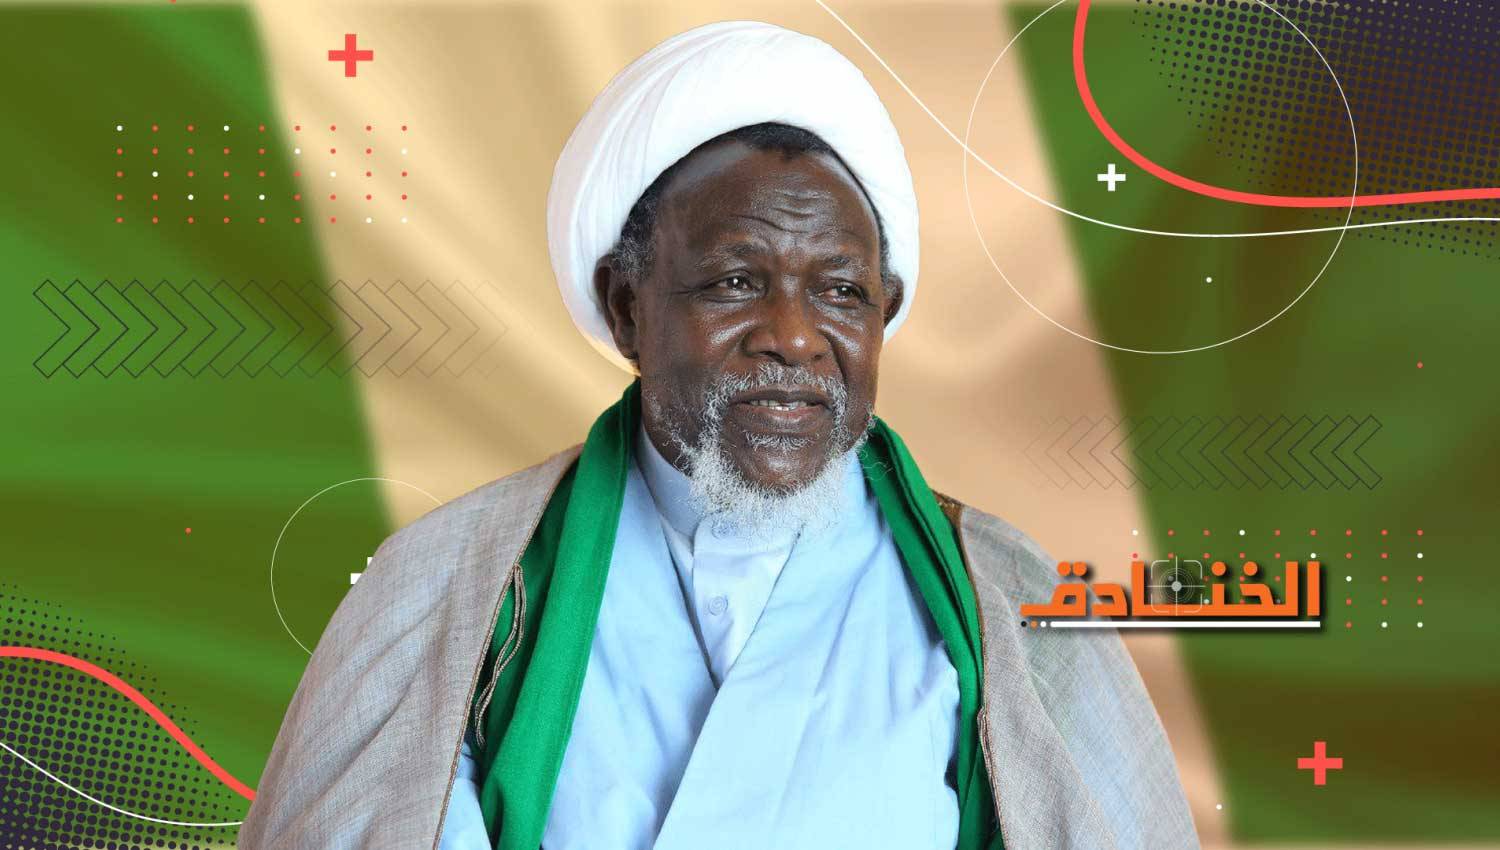 الشيخ ابراهيم الزكزاكي: قائد المظلومين في نيجيريا